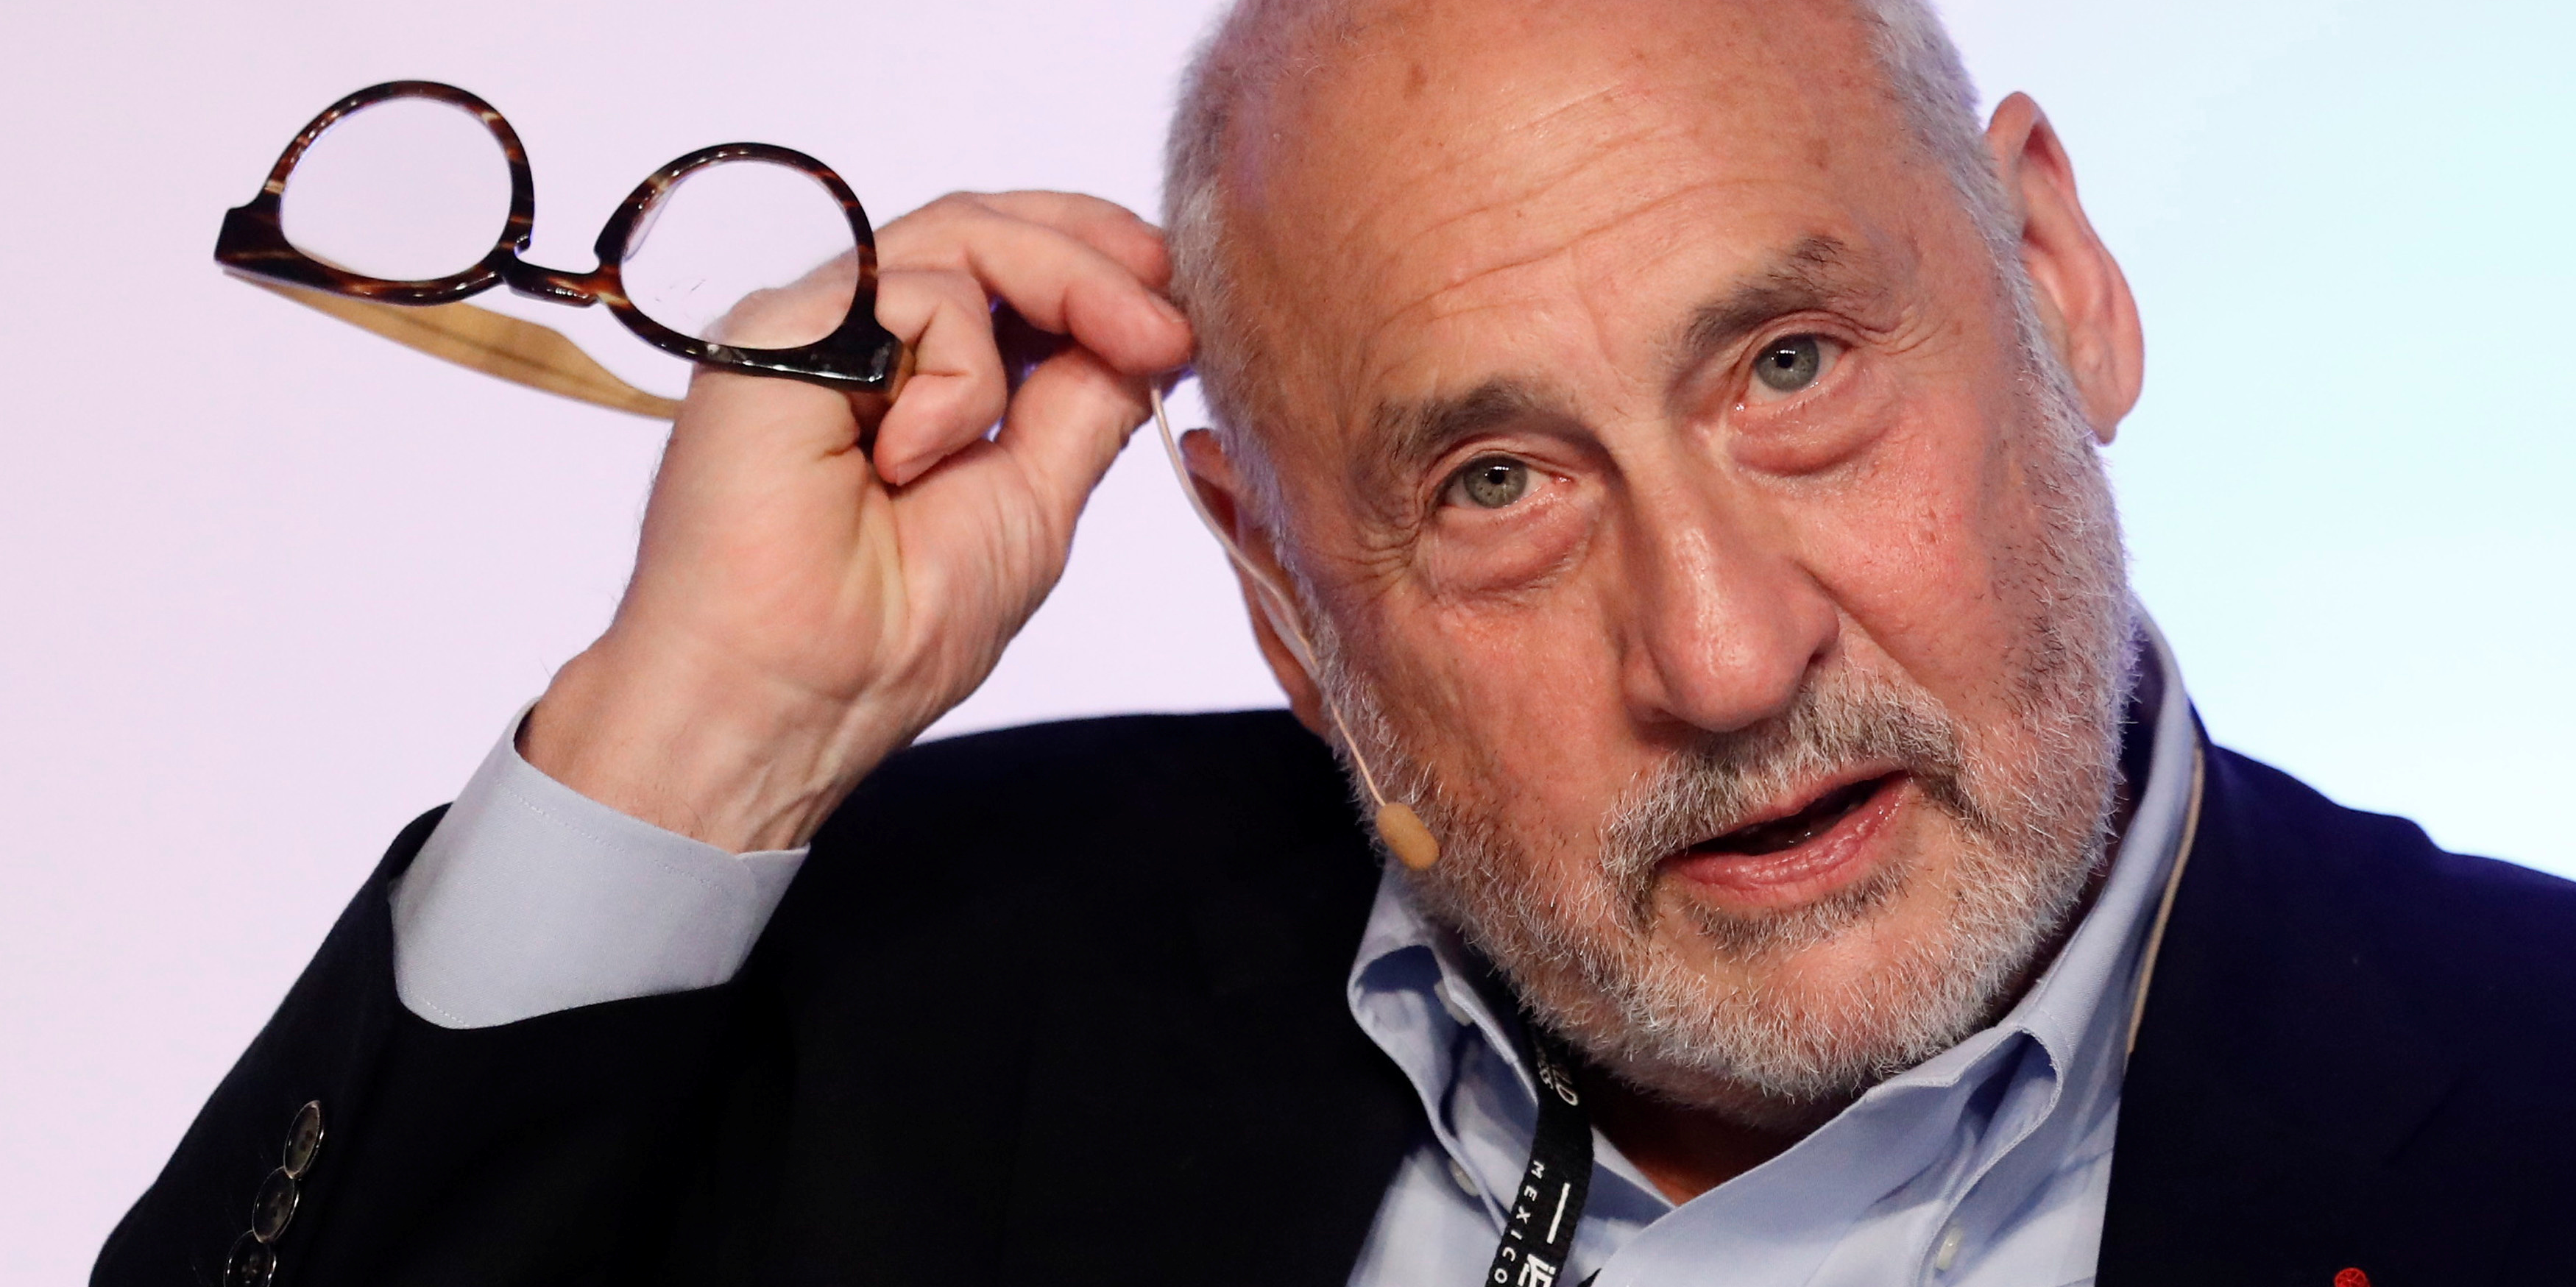 Débarrassons-nous du PIB ! plaide Joseph Stiglitz